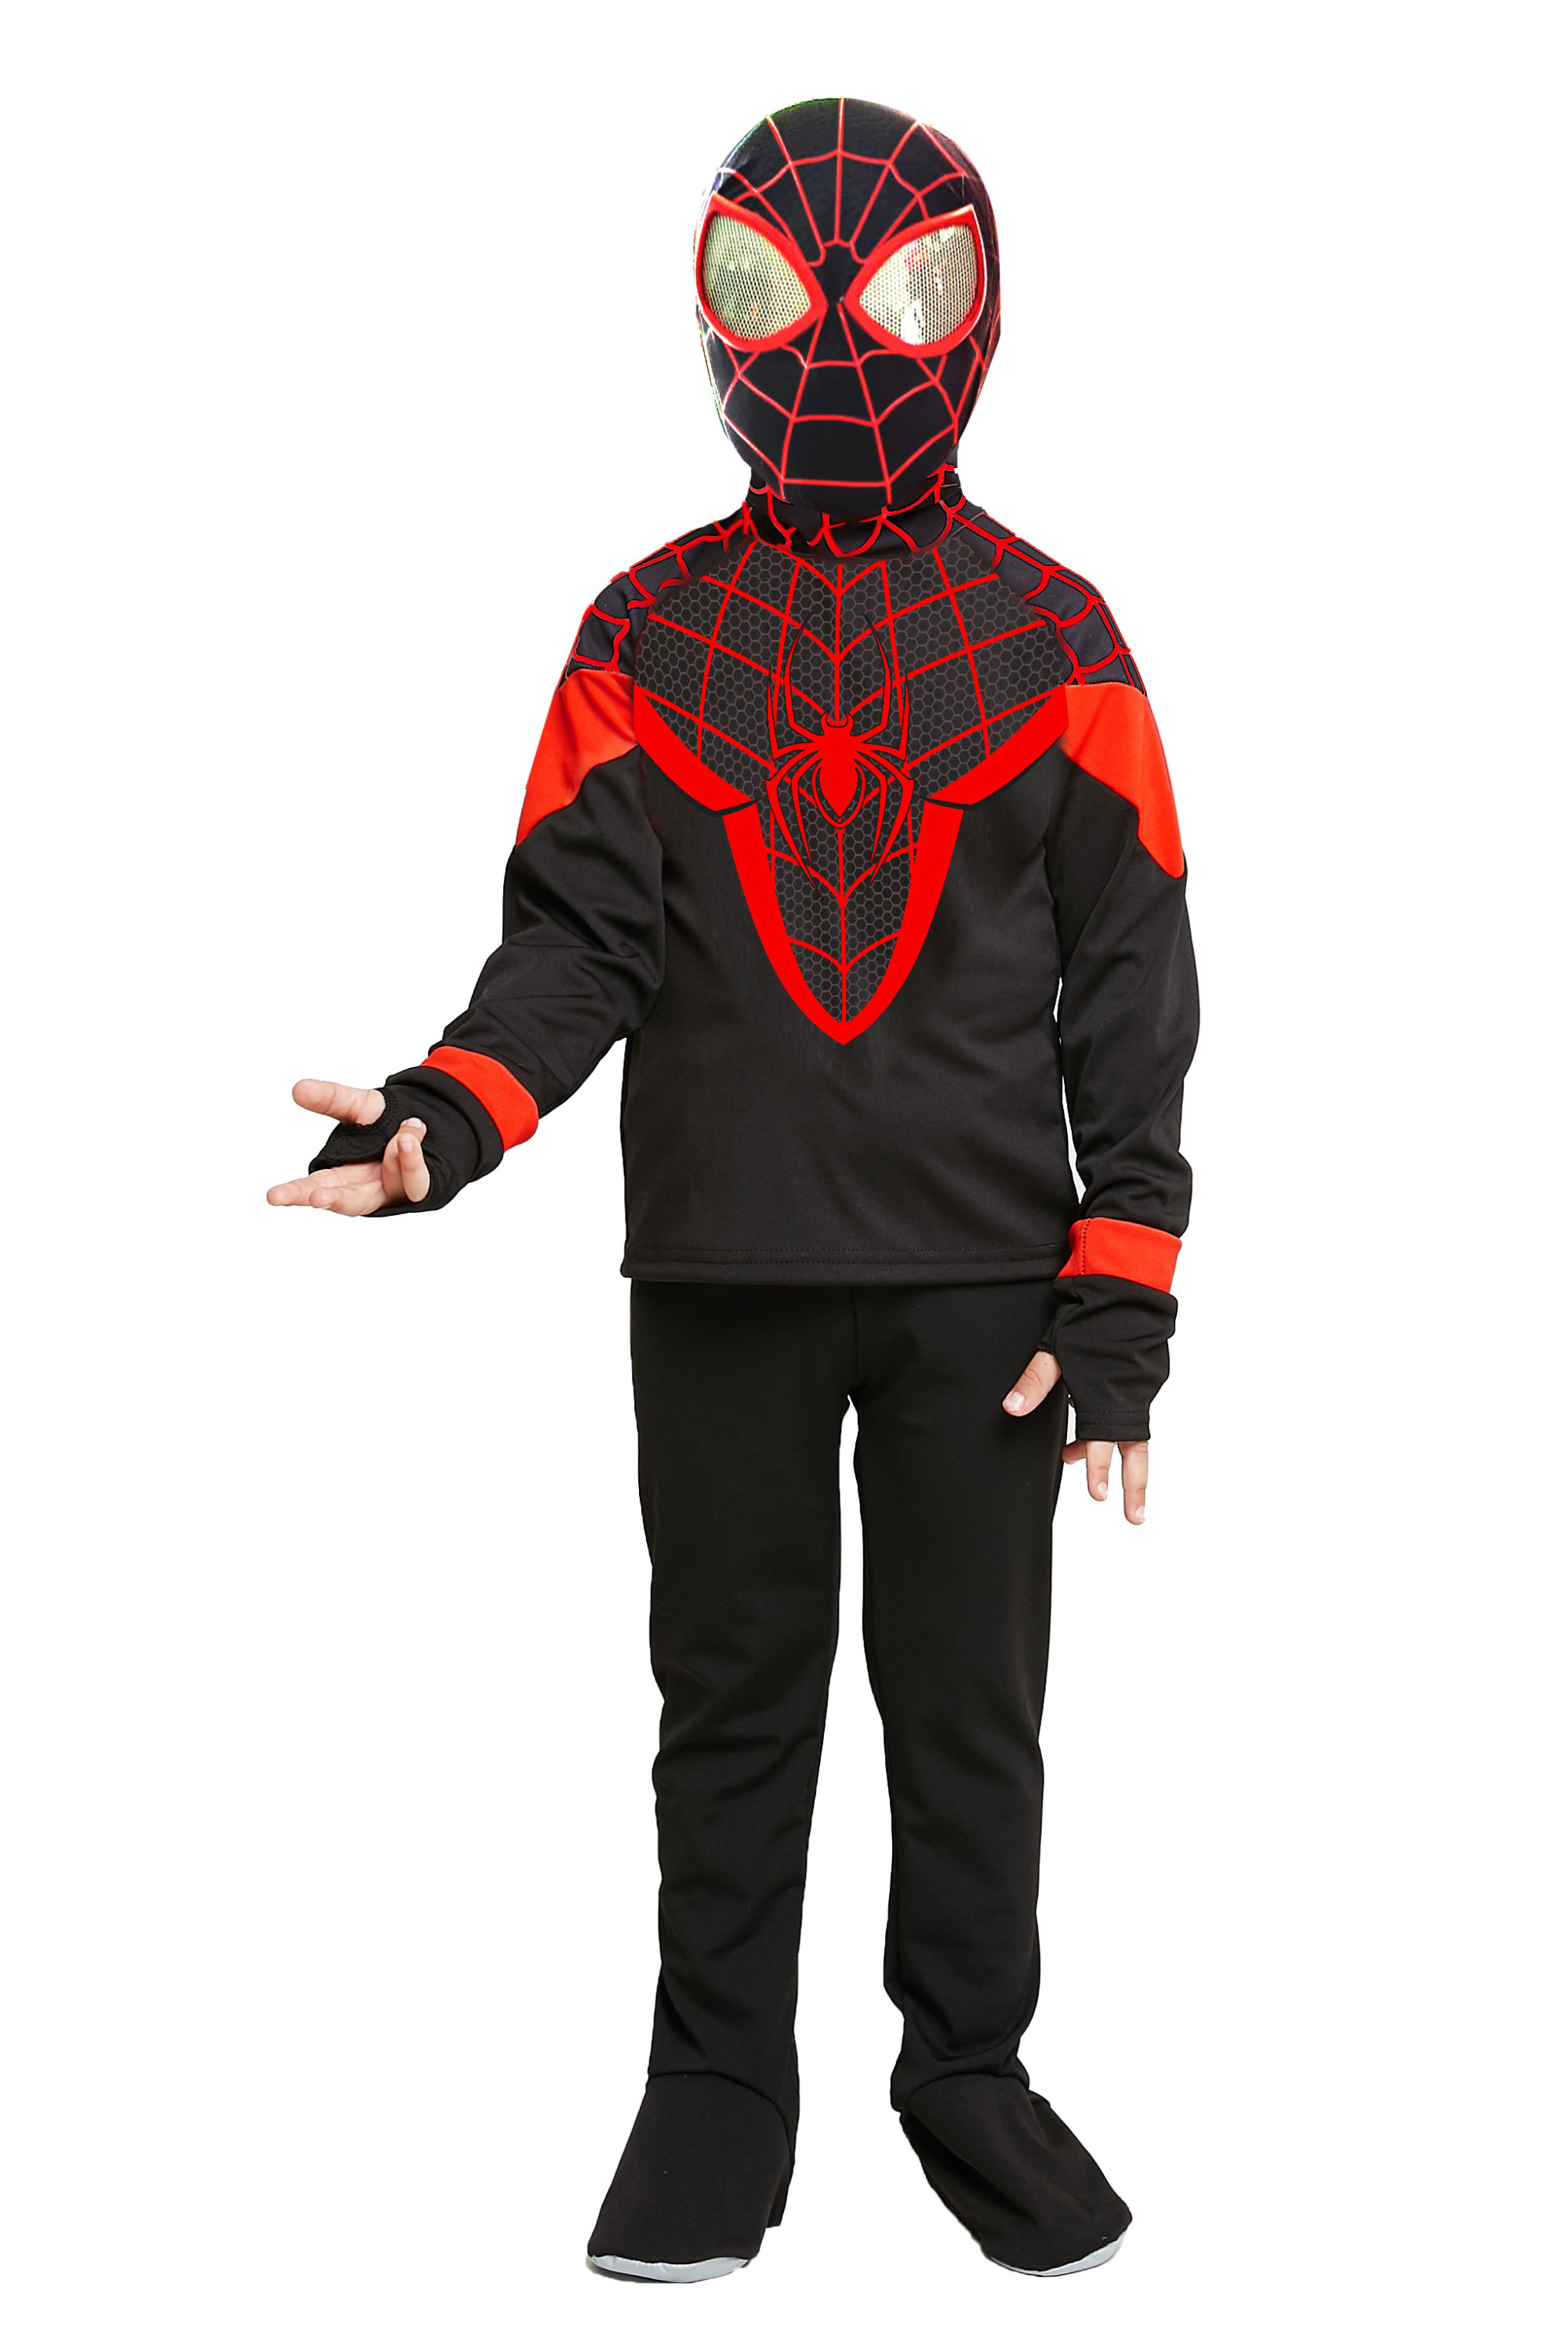 фото Карнавальный костюм человек-паук, размер 116-60, арт. 9016 к-21 batik 9016 к-21